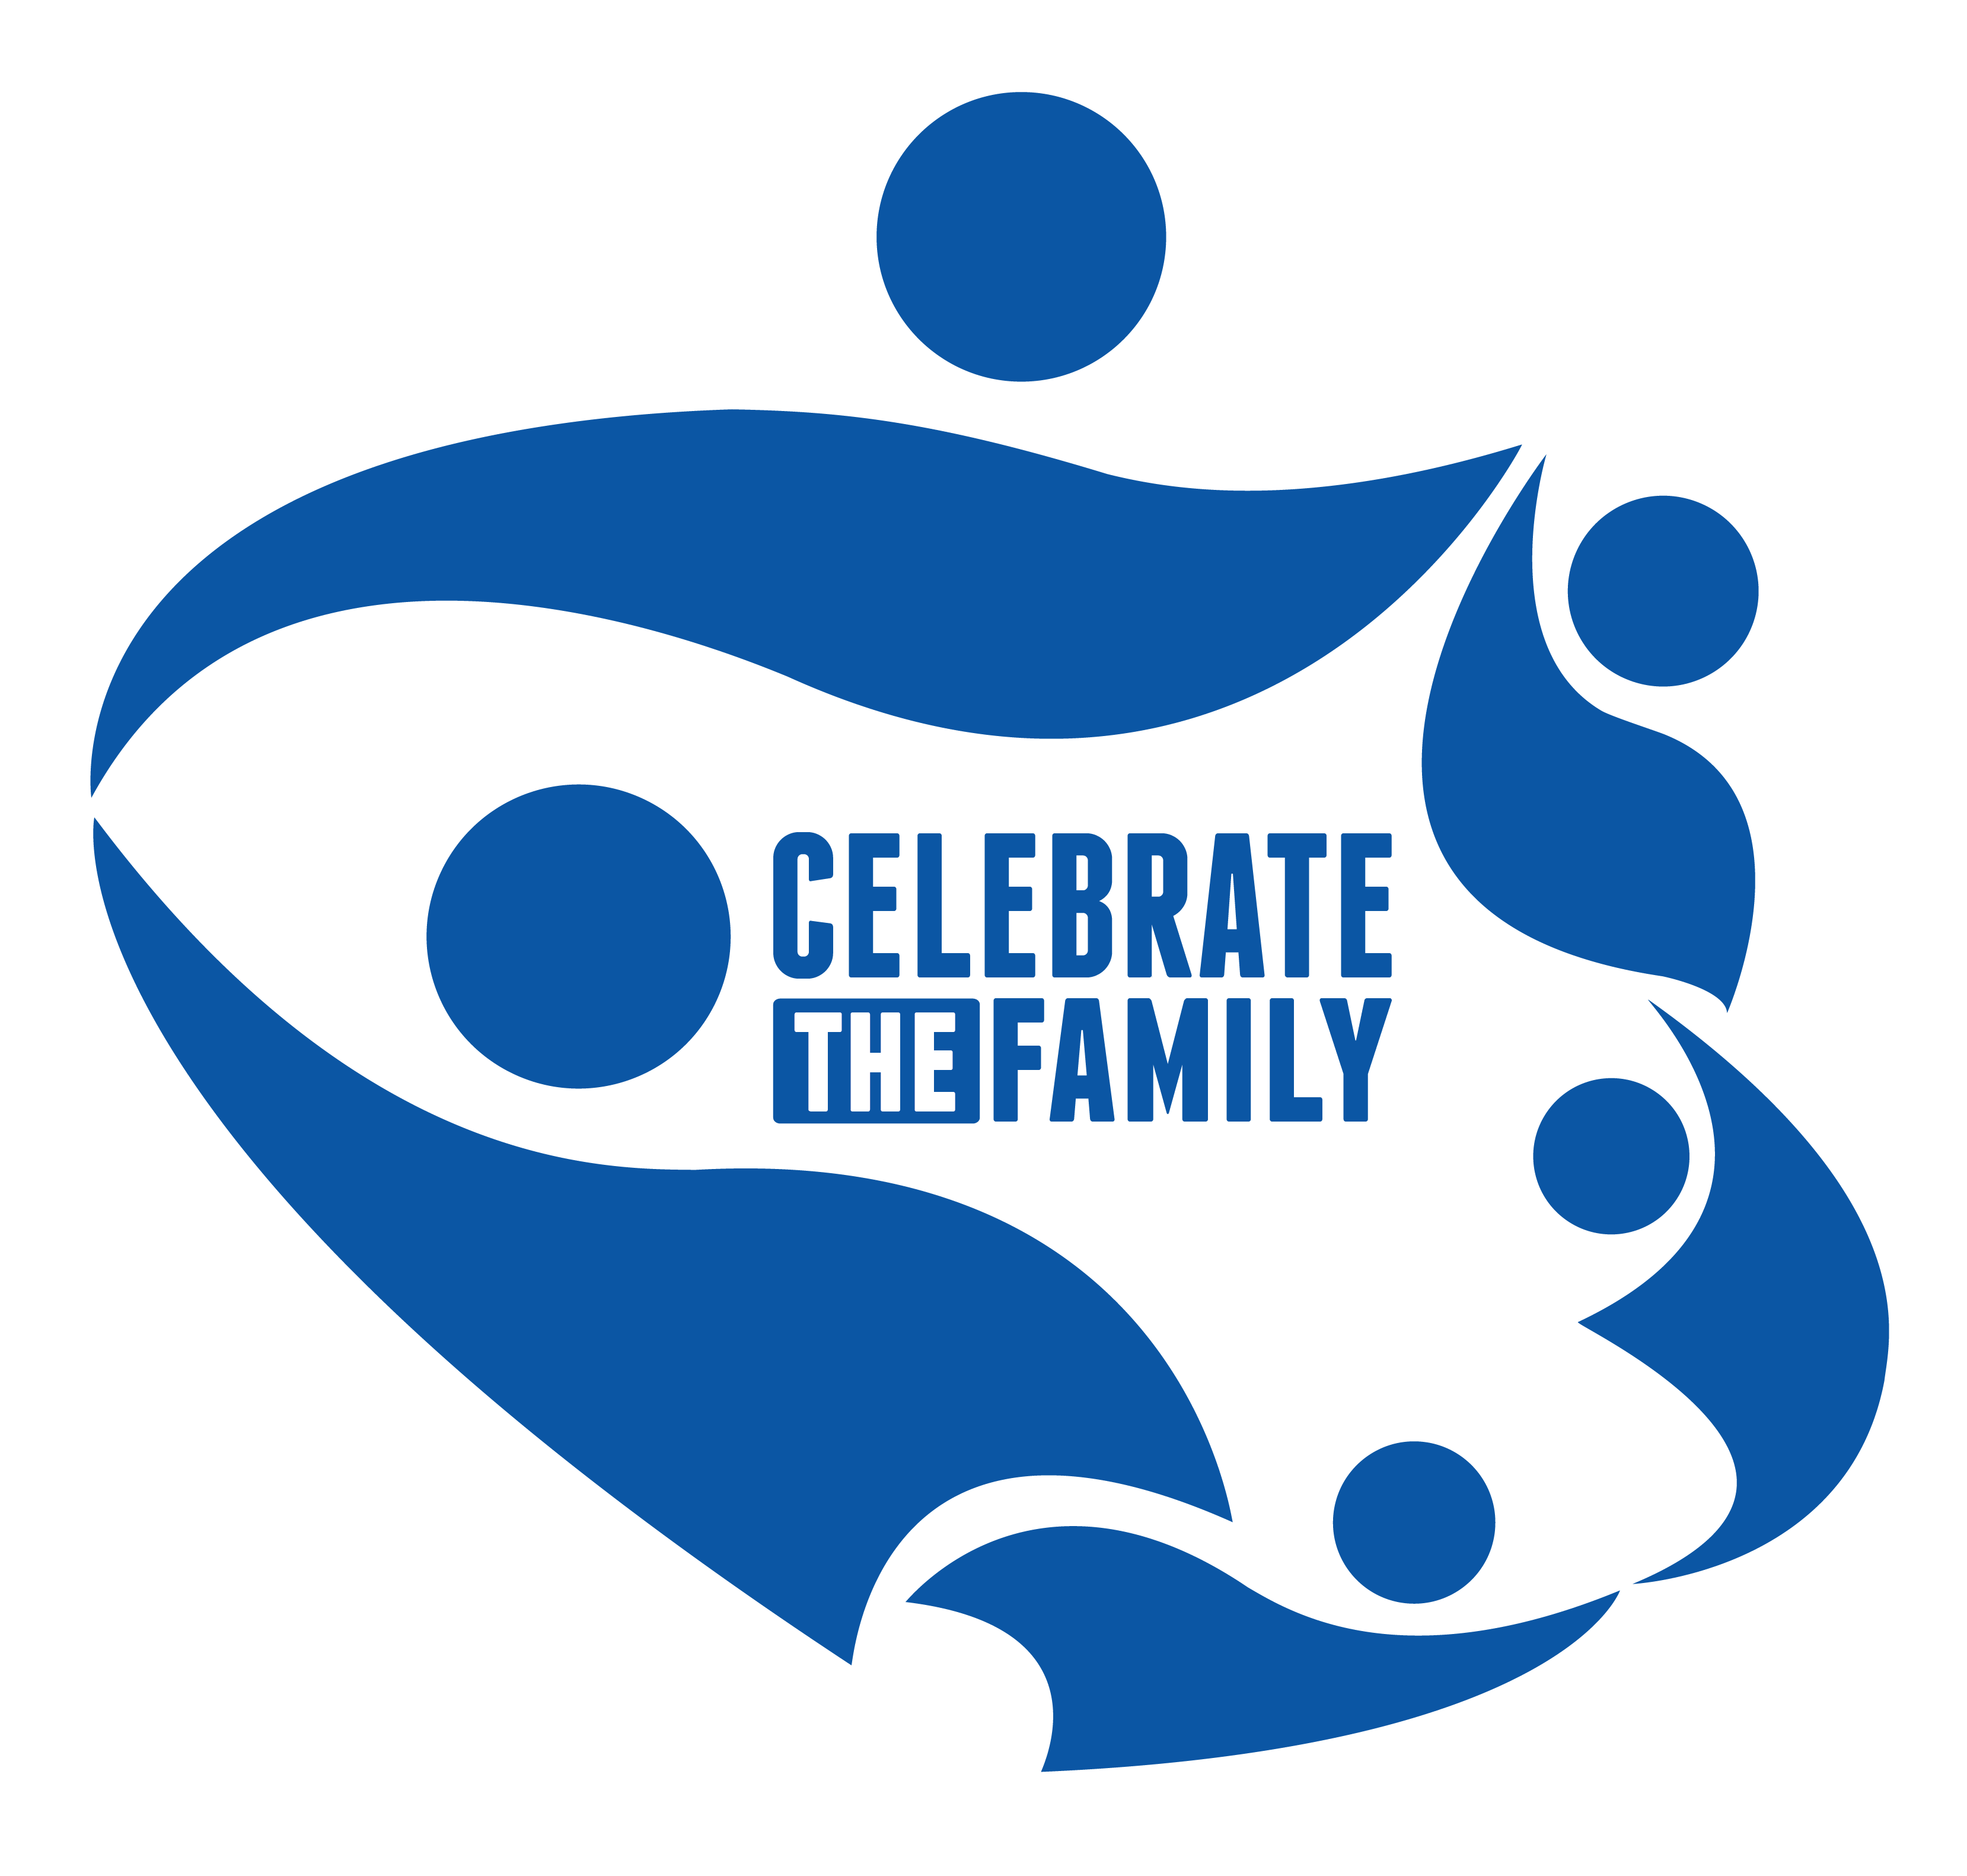 United Family Logo - World Youth Alliance | WYA Celebrates the Family